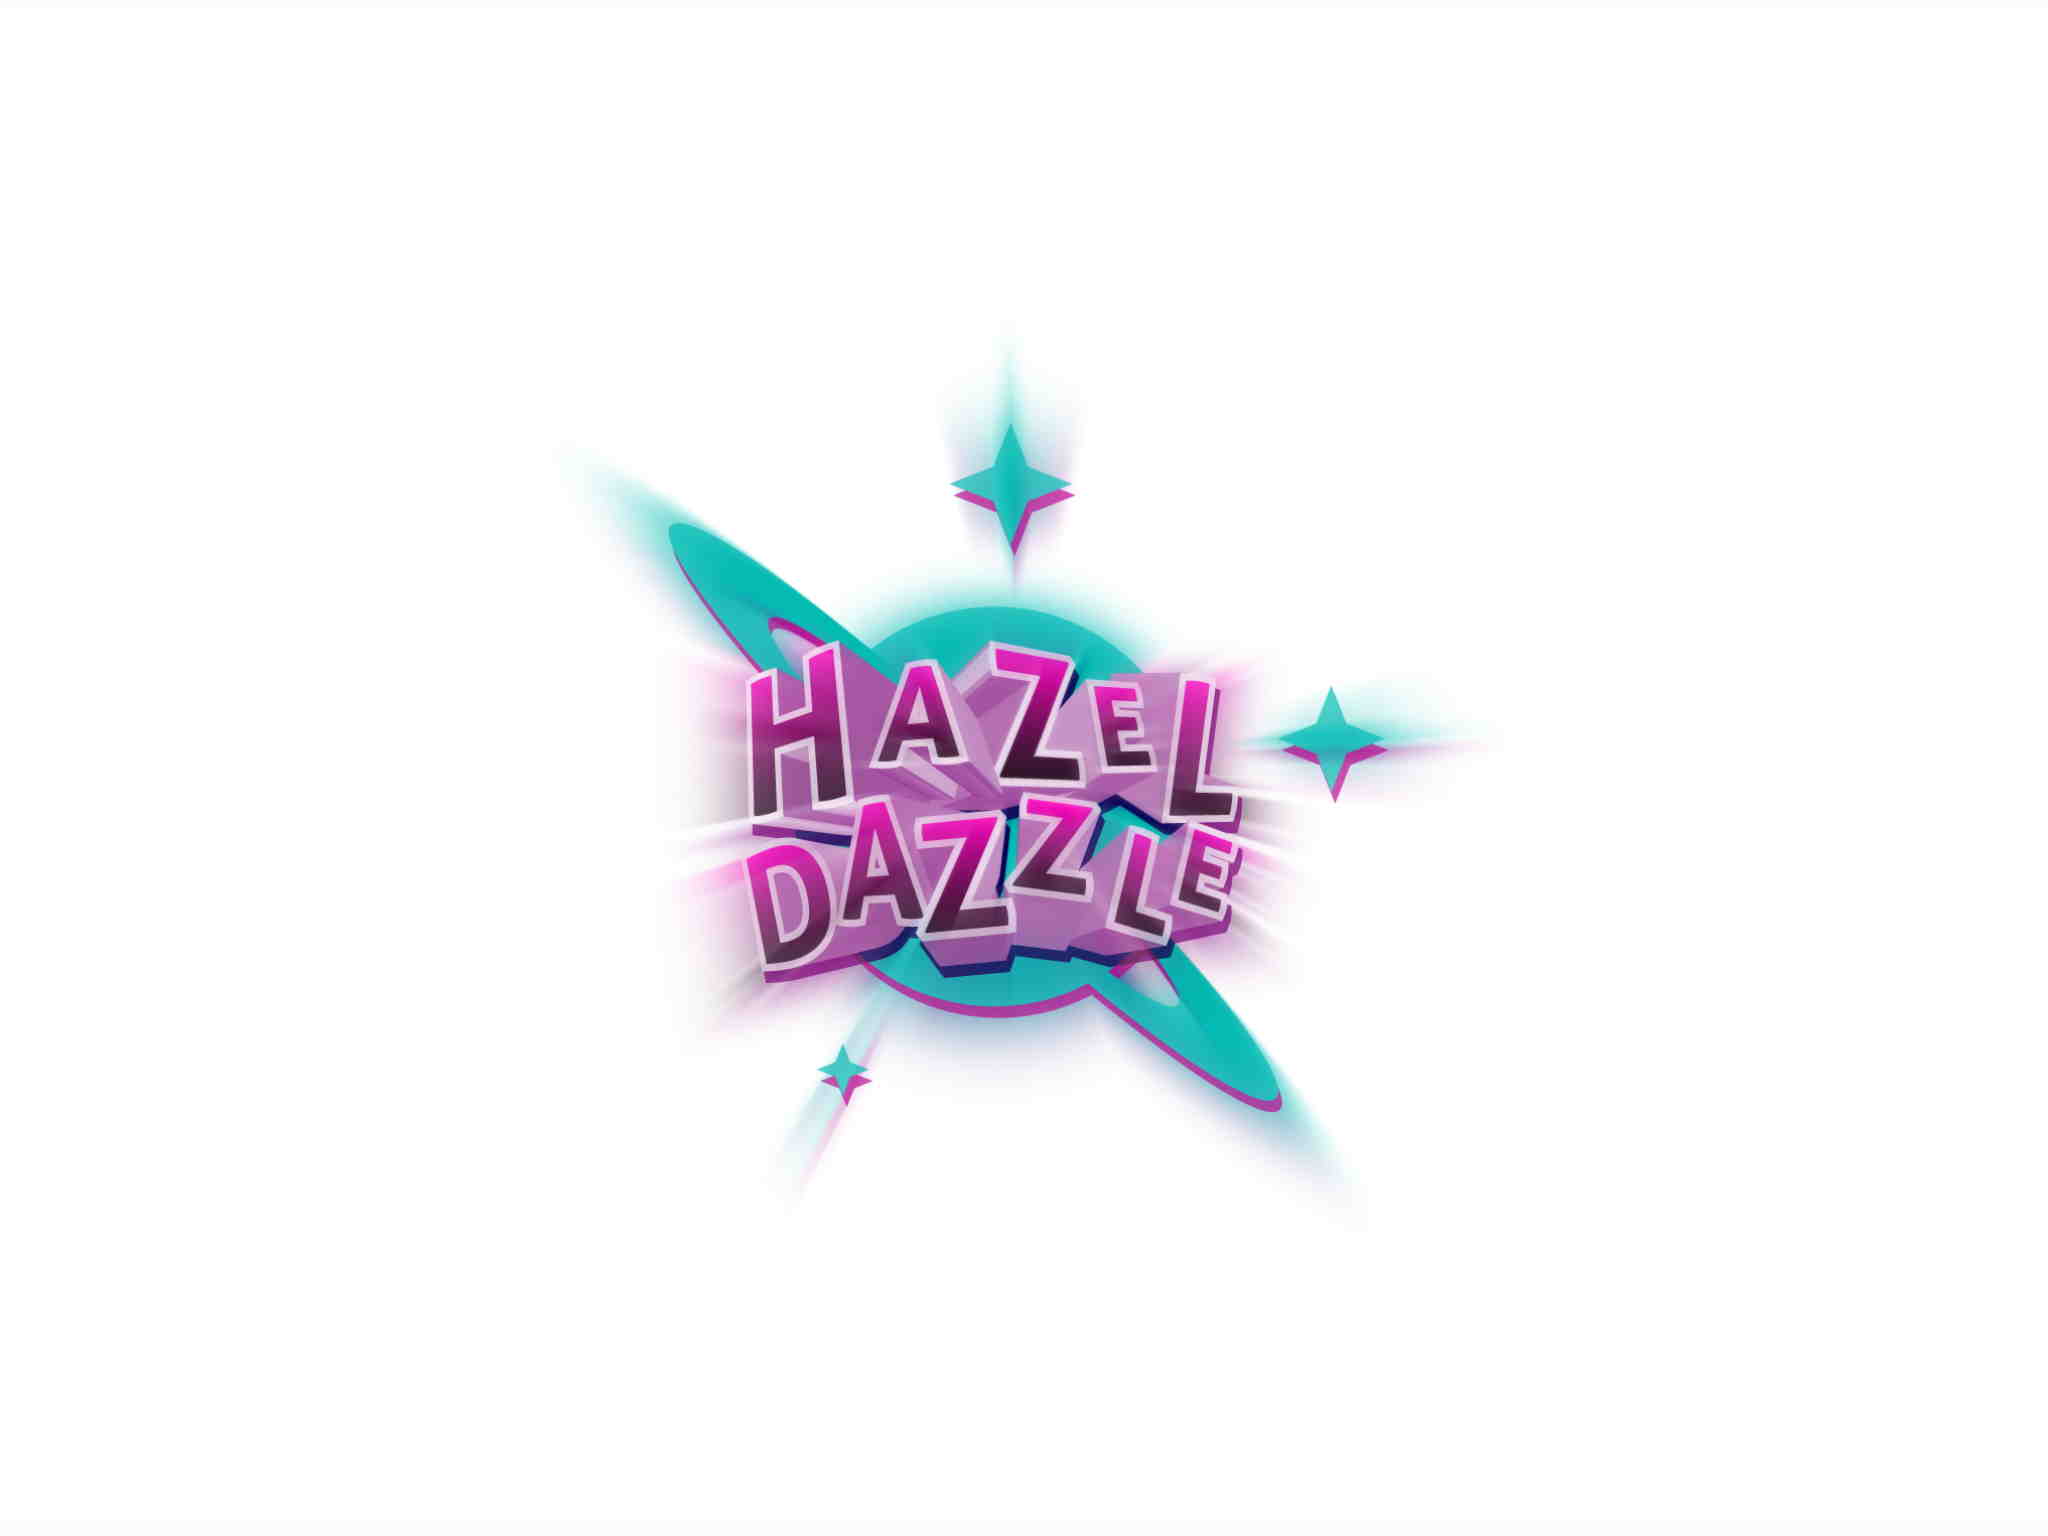 HazelDazzle_01